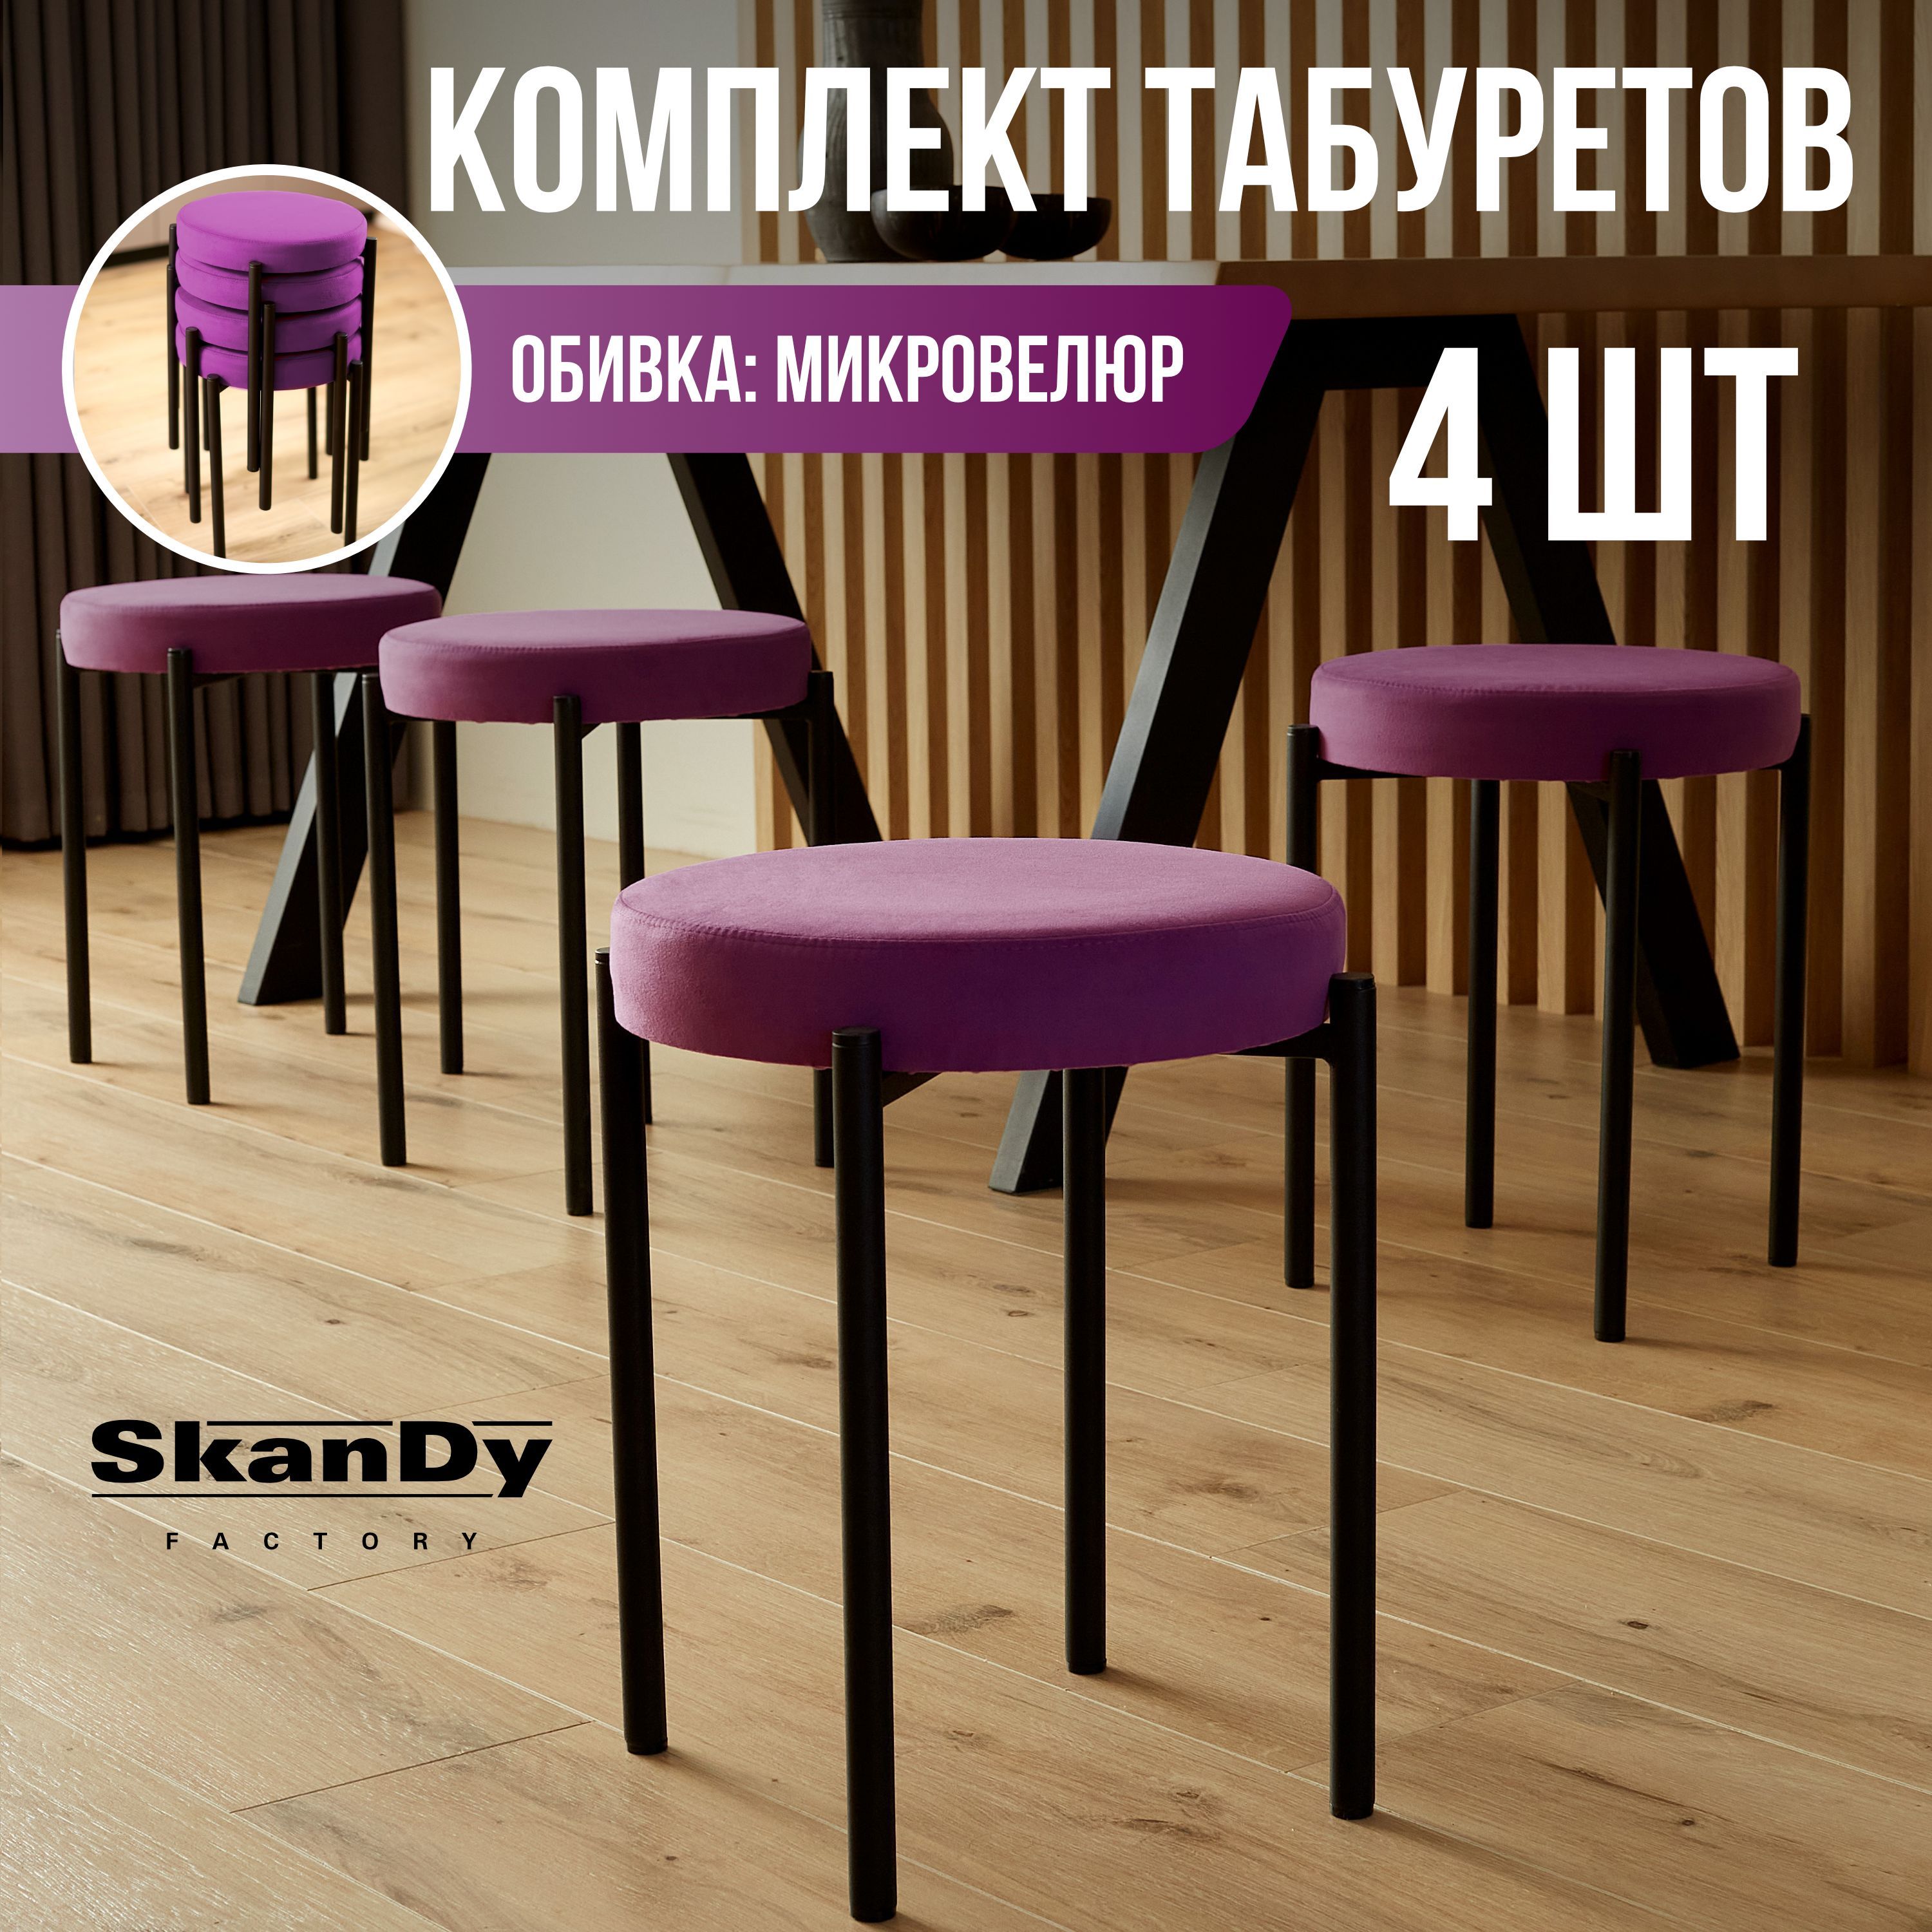 Мягкий табурет для кухни SkanDy Factory, 4 шт, фиолетовый